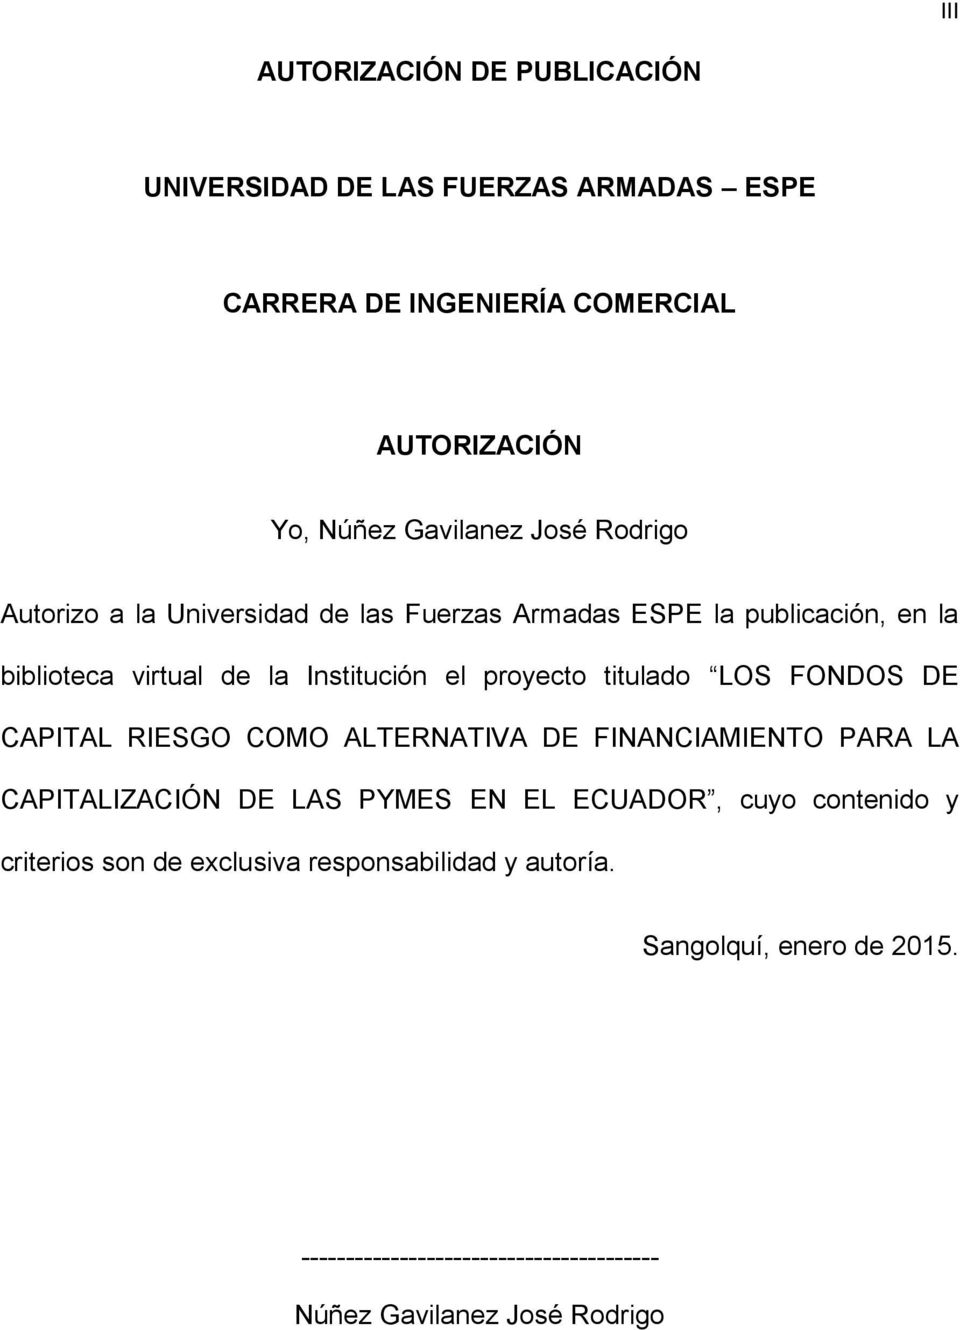 LOS FONDOS DE CAPITAL RIESGO COMO ALTERNATIVA DE FINANCIAMIENTO PARA LA CAPITALIZACIÓN DE LAS PYMES EN EL ECUADOR, cuyo contenido y criterios